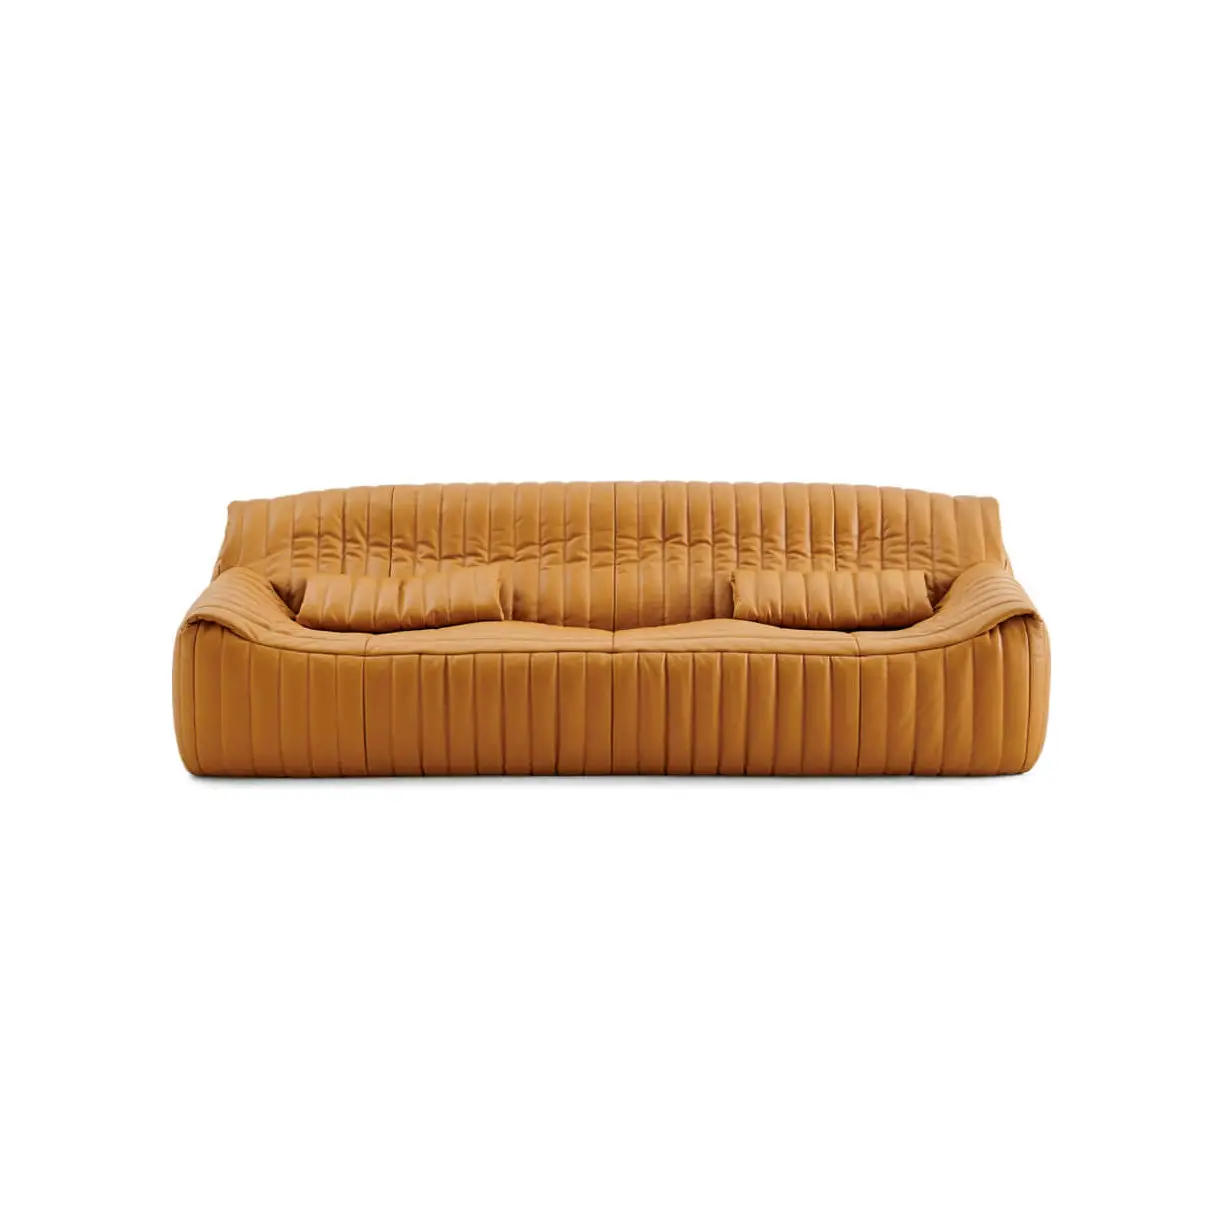 Sofa kulit minimalis sederhana, mewah, Sofa santai, Cinna, 3 kursi, Sofa kulit untuk ruang tamu